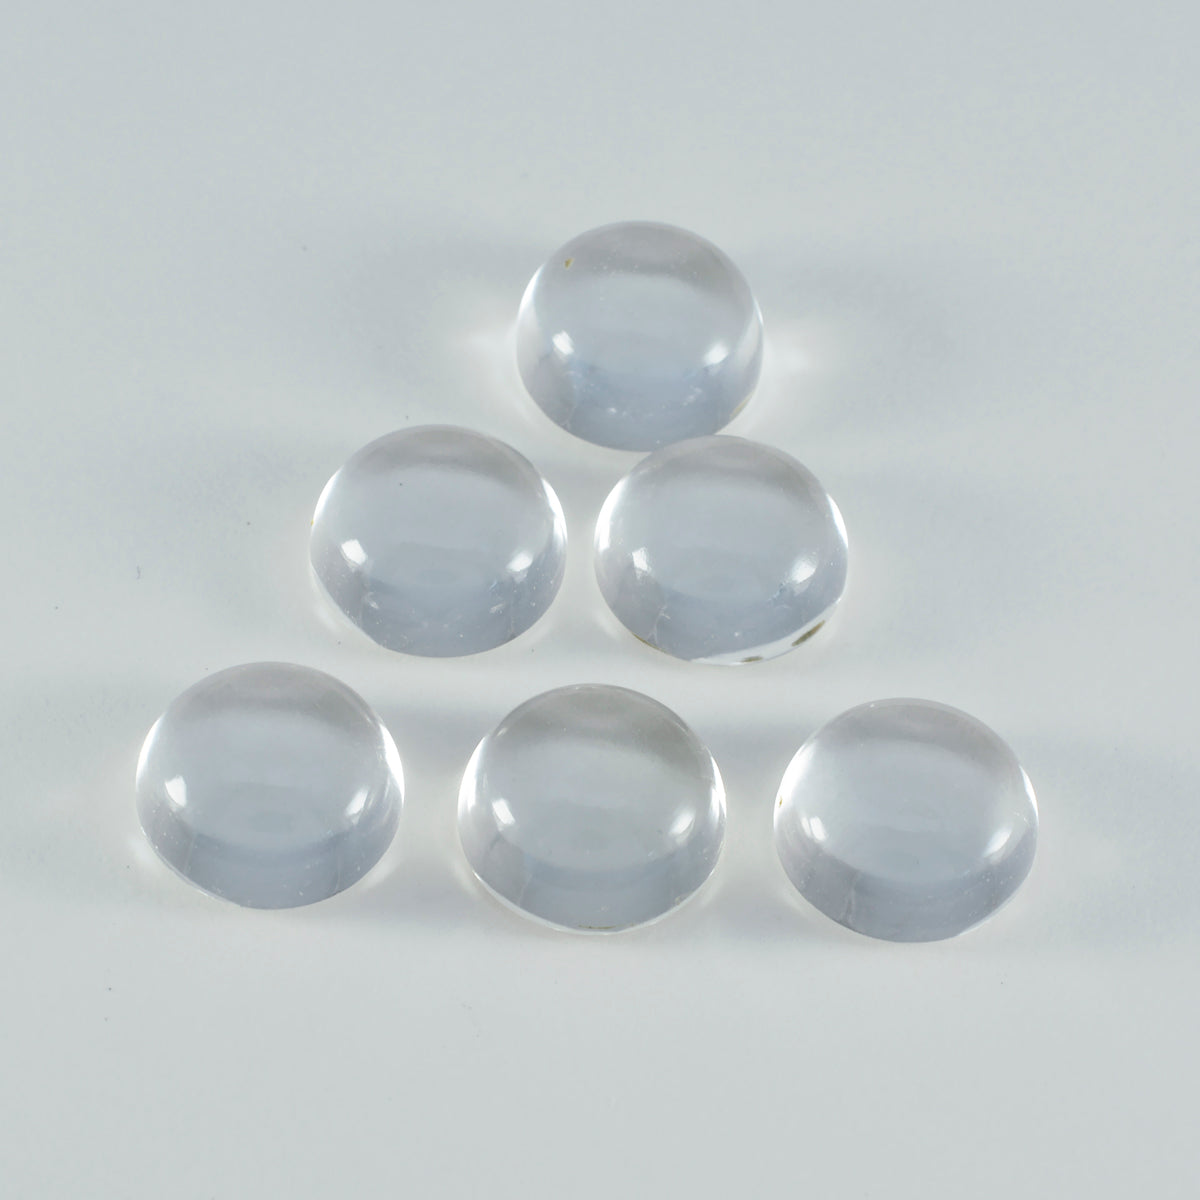 riyogems 1pc ホワイト クリスタル クォーツ カボション 8x8 mm ラウンド形状 a1 品質の宝石